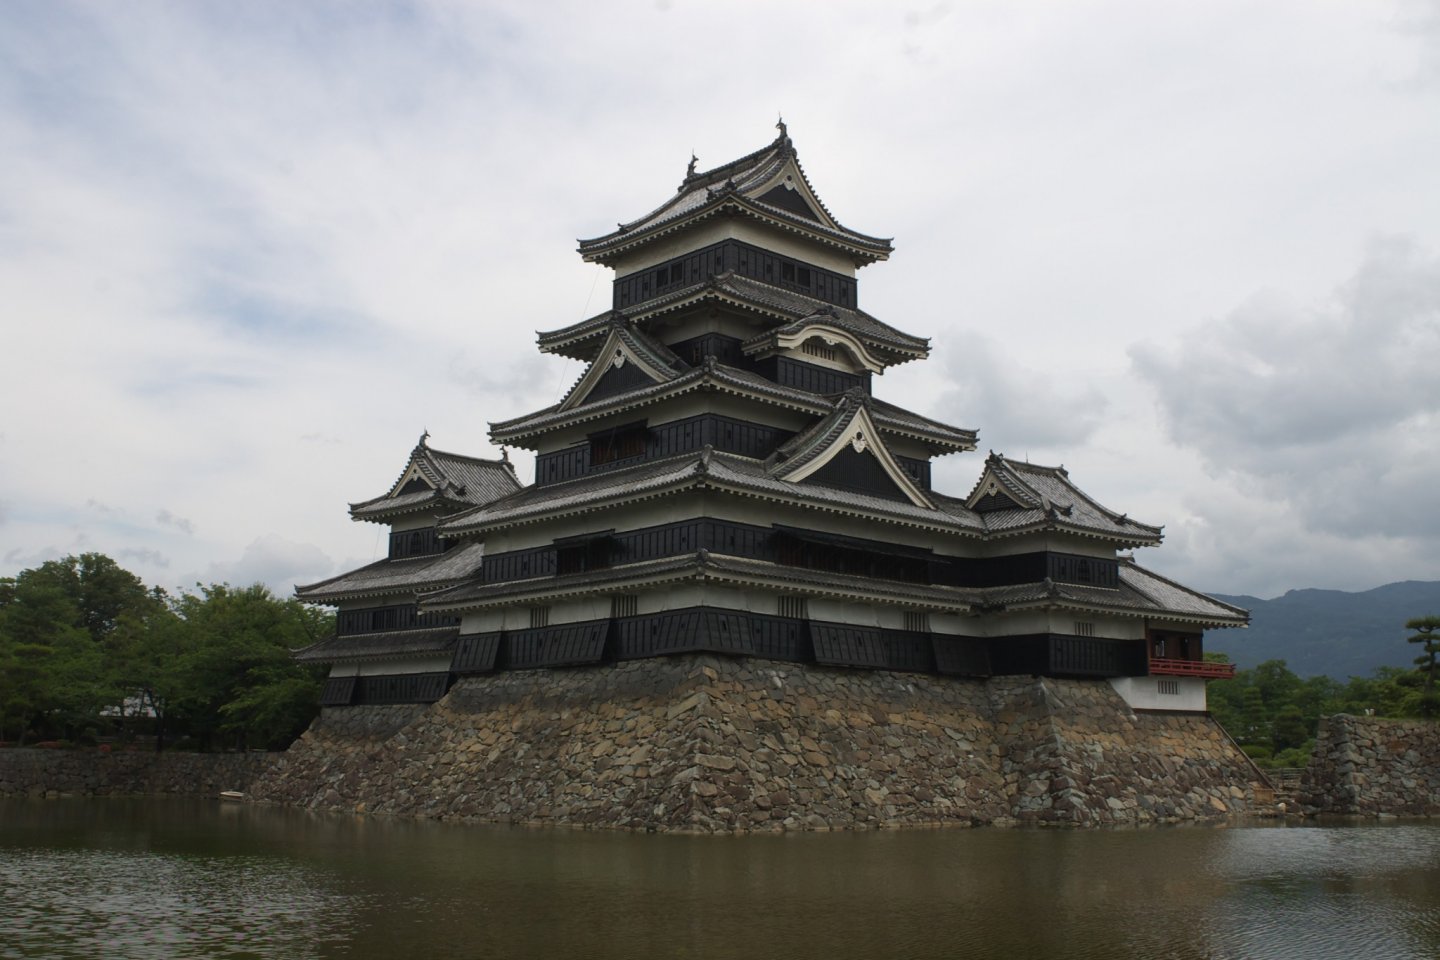 Из-за черных стен и характерного очертания боковых башен, напоминающих распростертые птичьи крылья, замок Мацумото был прозван "Замком черного ворона"